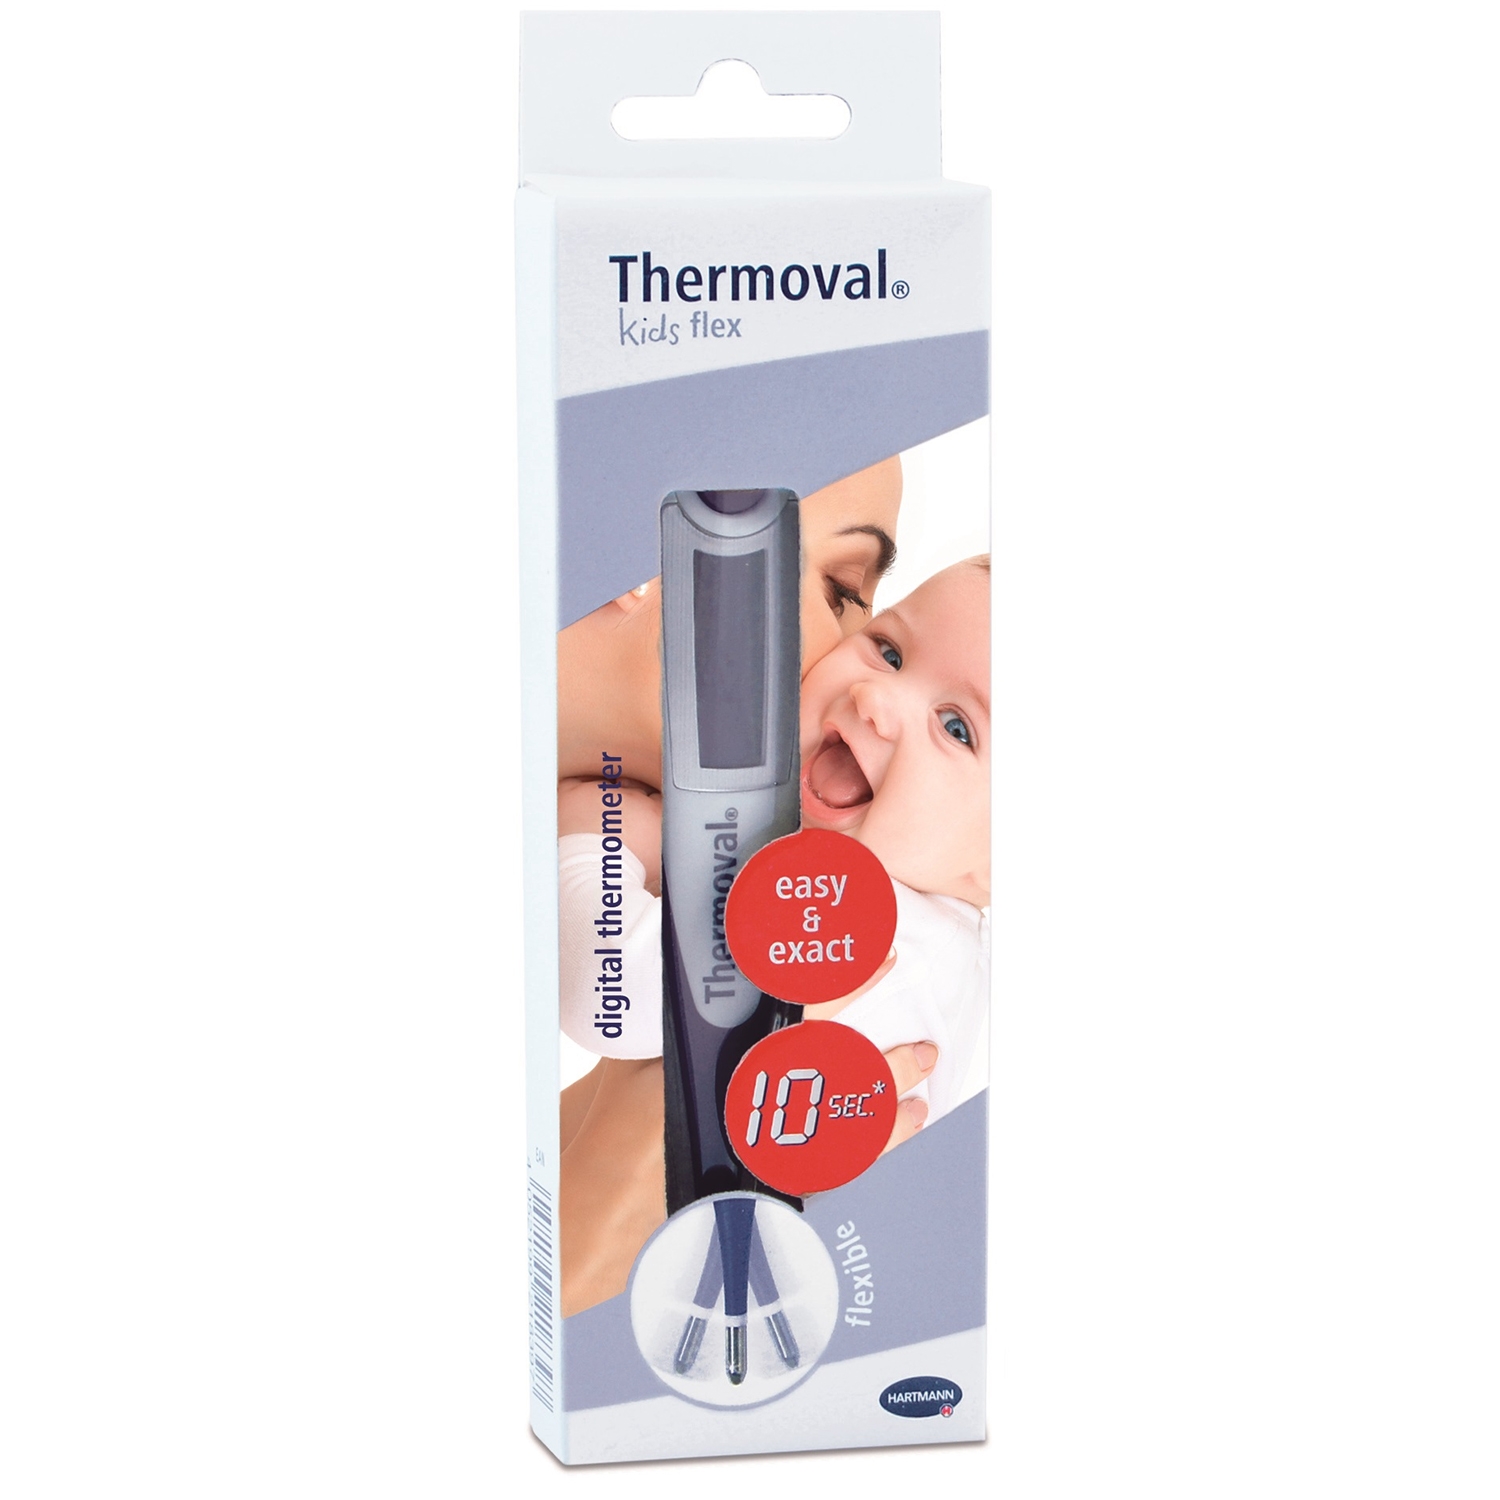 Thermomètre Thermoval flex